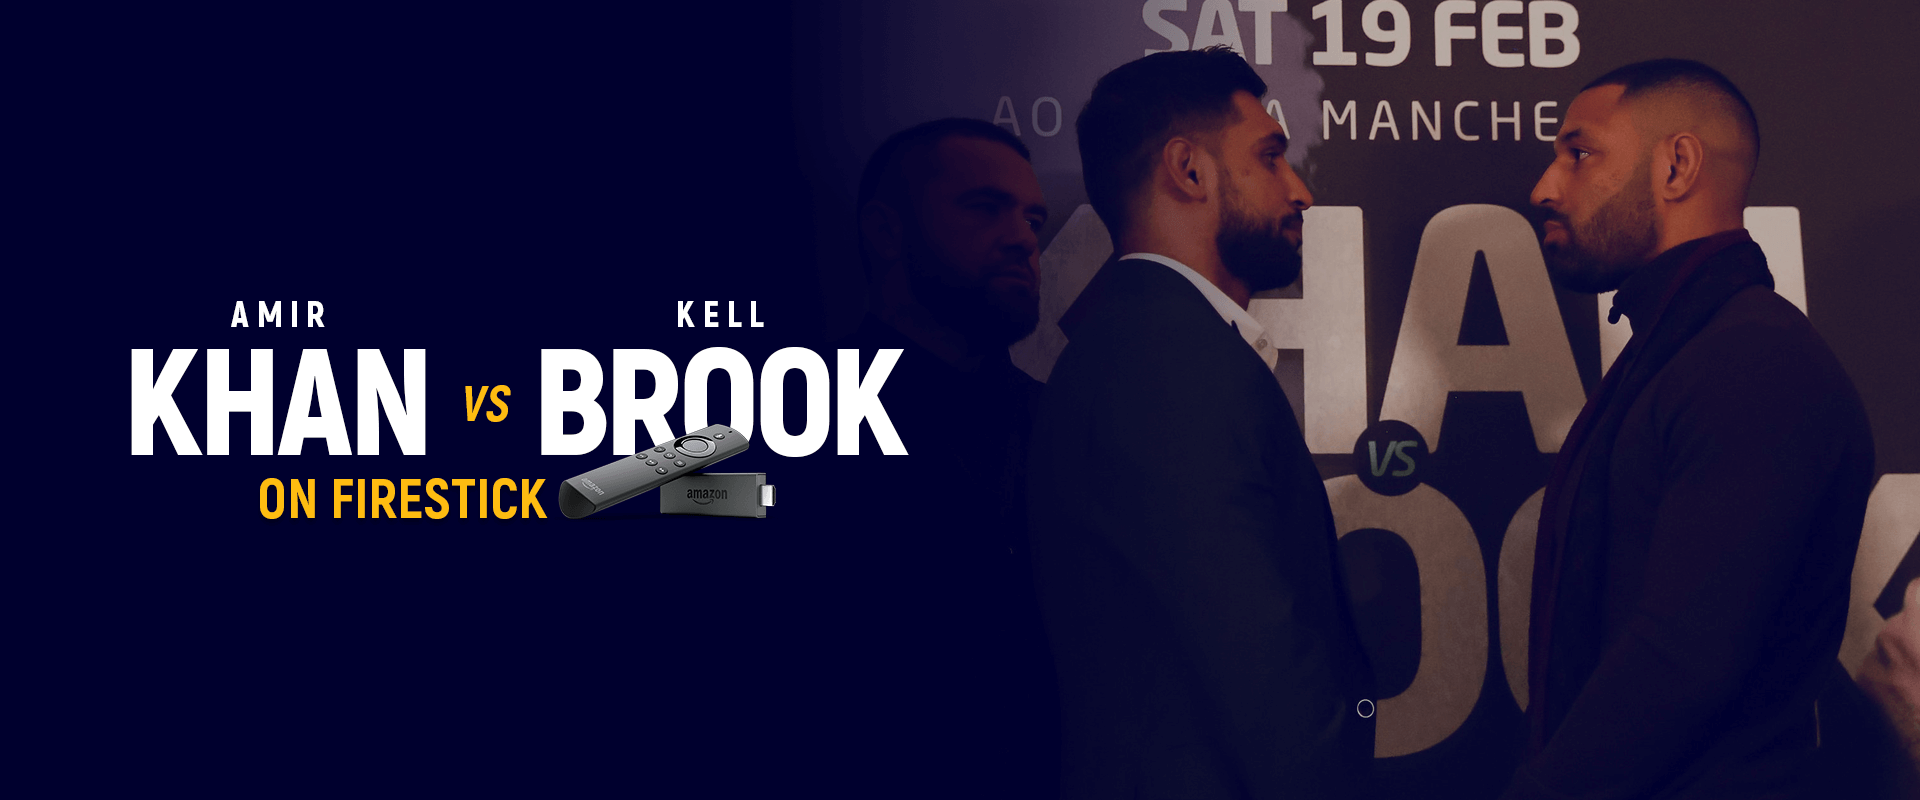 How to Watch Amir Khan vs Kell Brook on Firestick